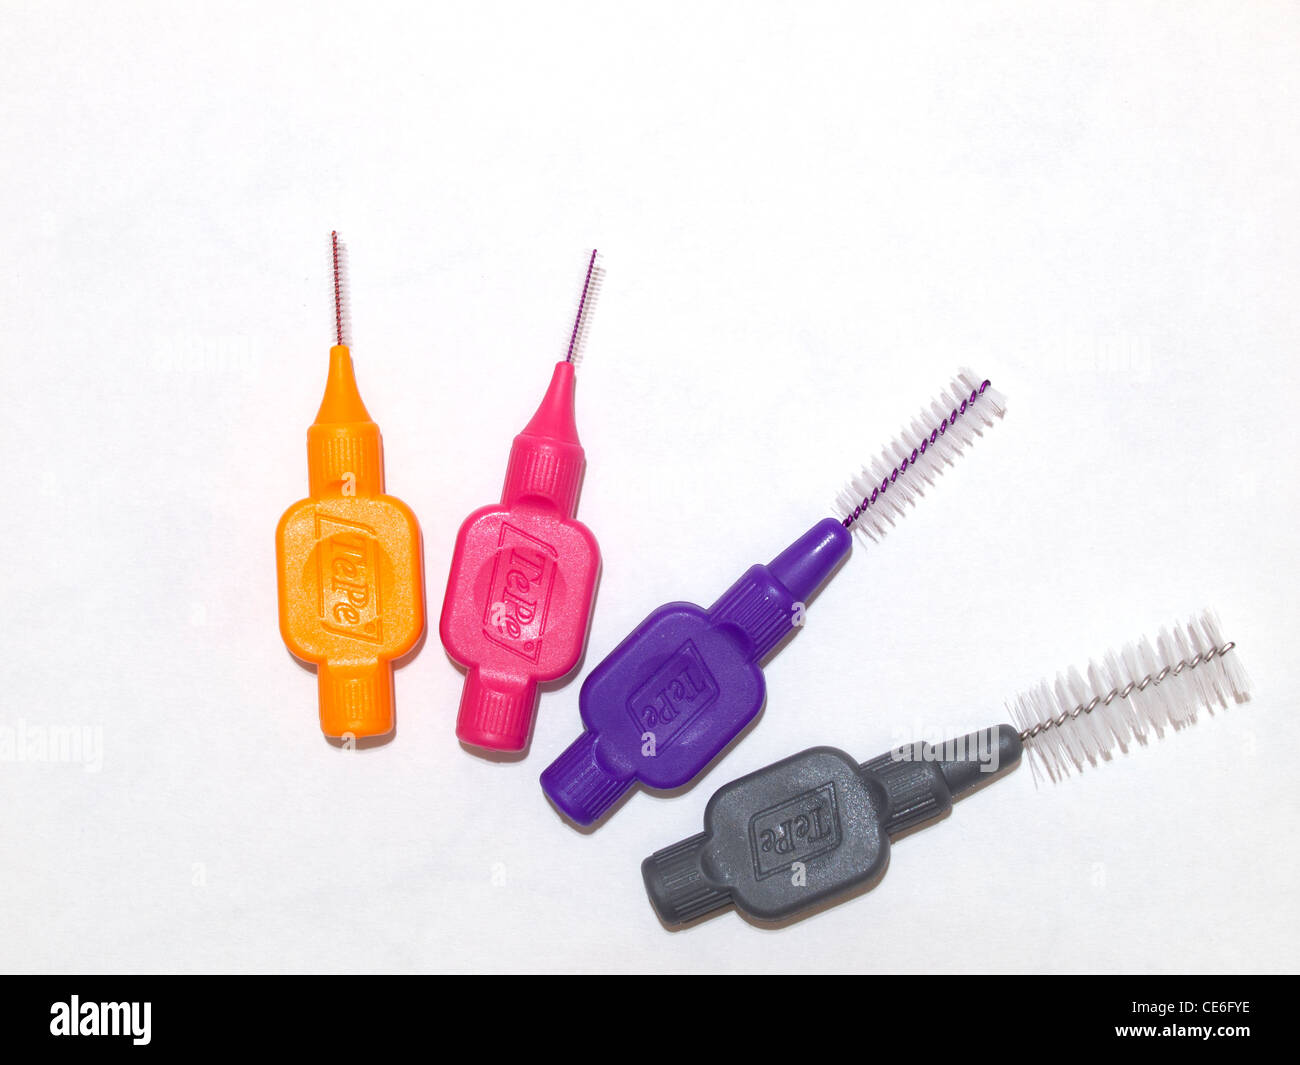 Cuatro entre dental cepillos de diversos tamaños para limpiar entre los dientes dispuestos en forma de abanico Foto de stock